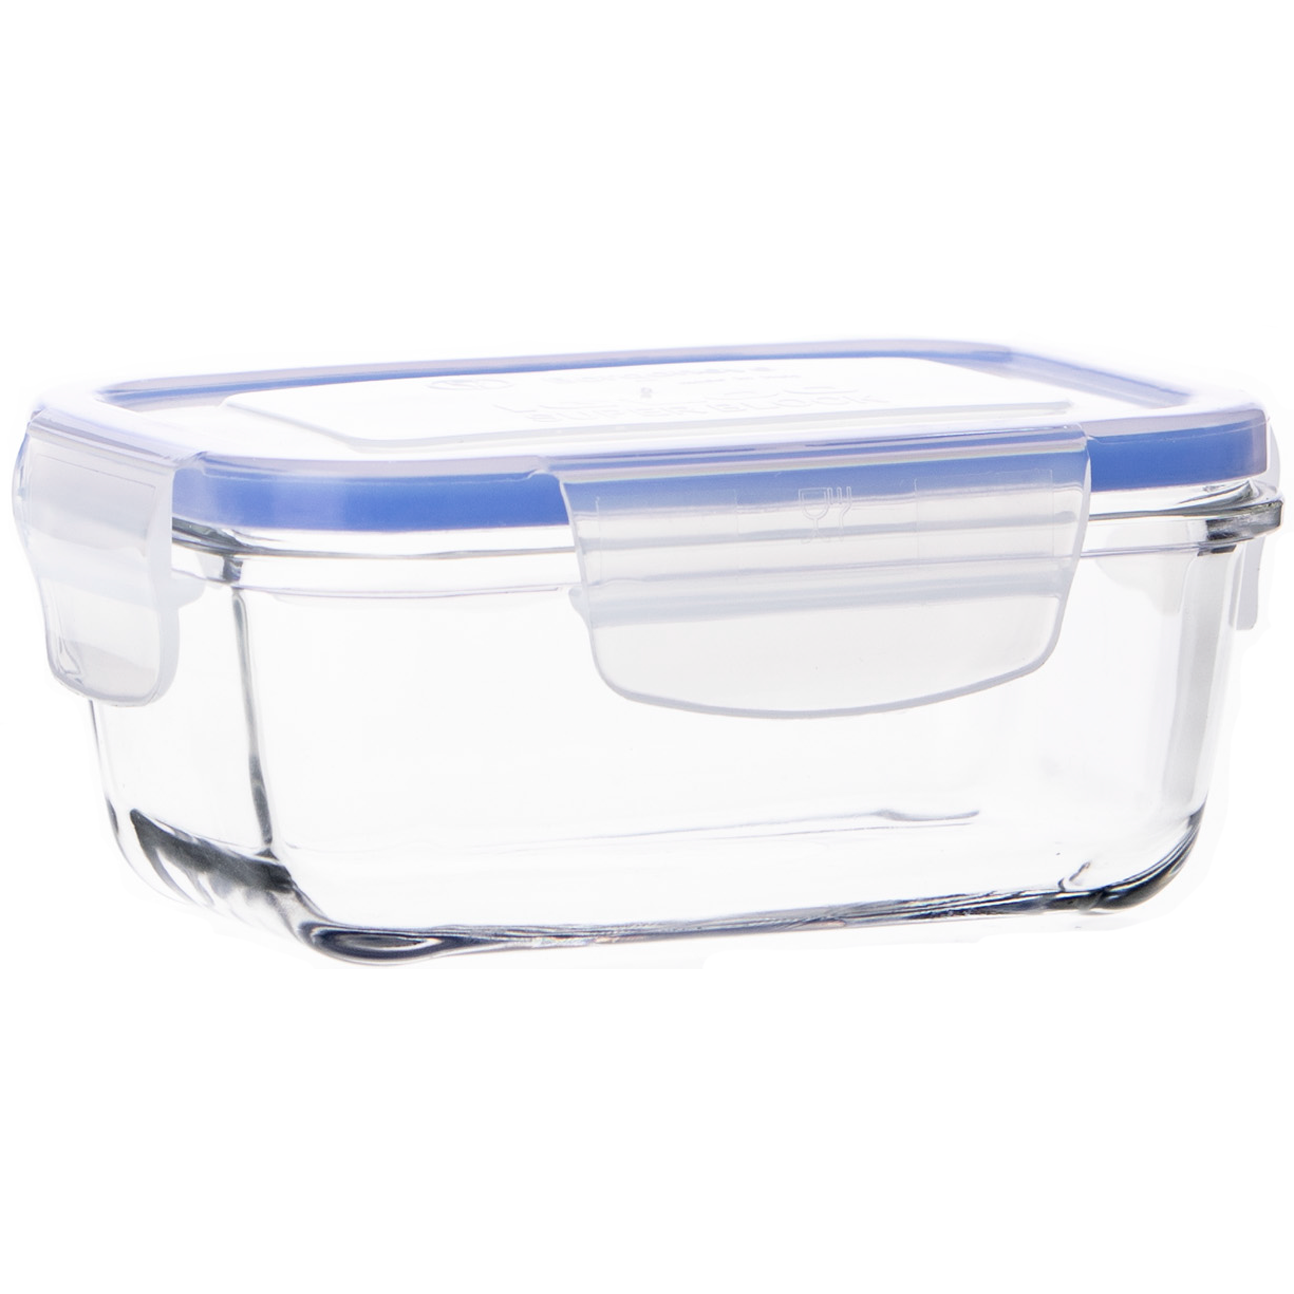 Contenedor vidrio rectangular 900 ml - Tapper — Amo cocinar